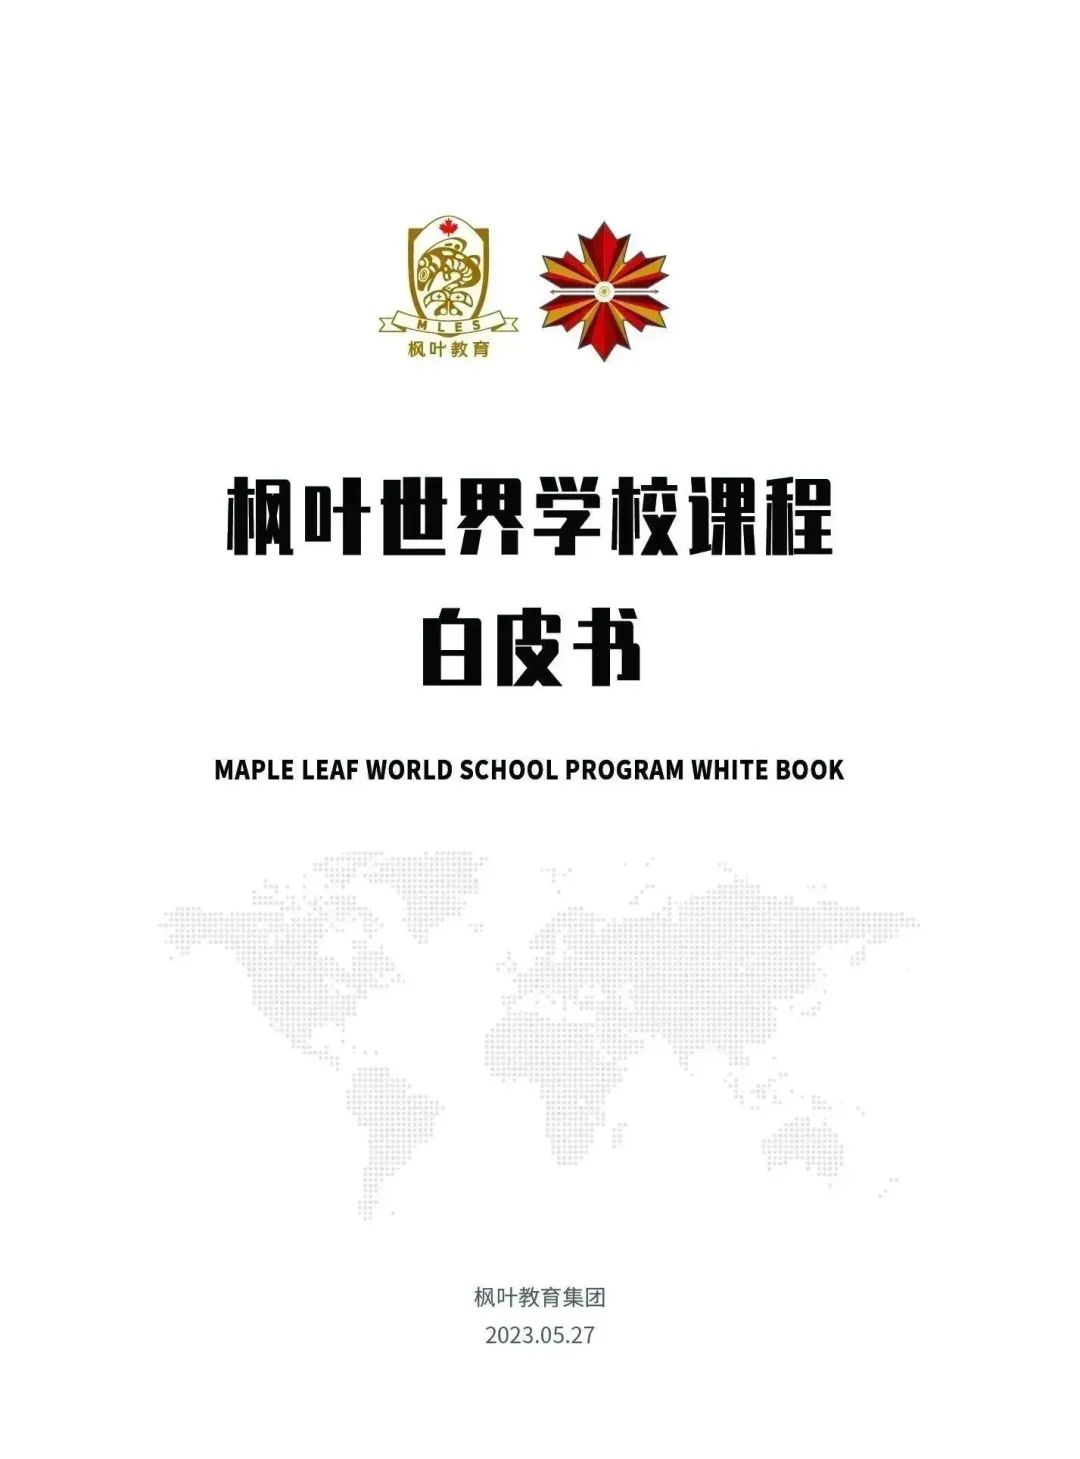 《枫叶世界学校课程白皮书》重磅发布